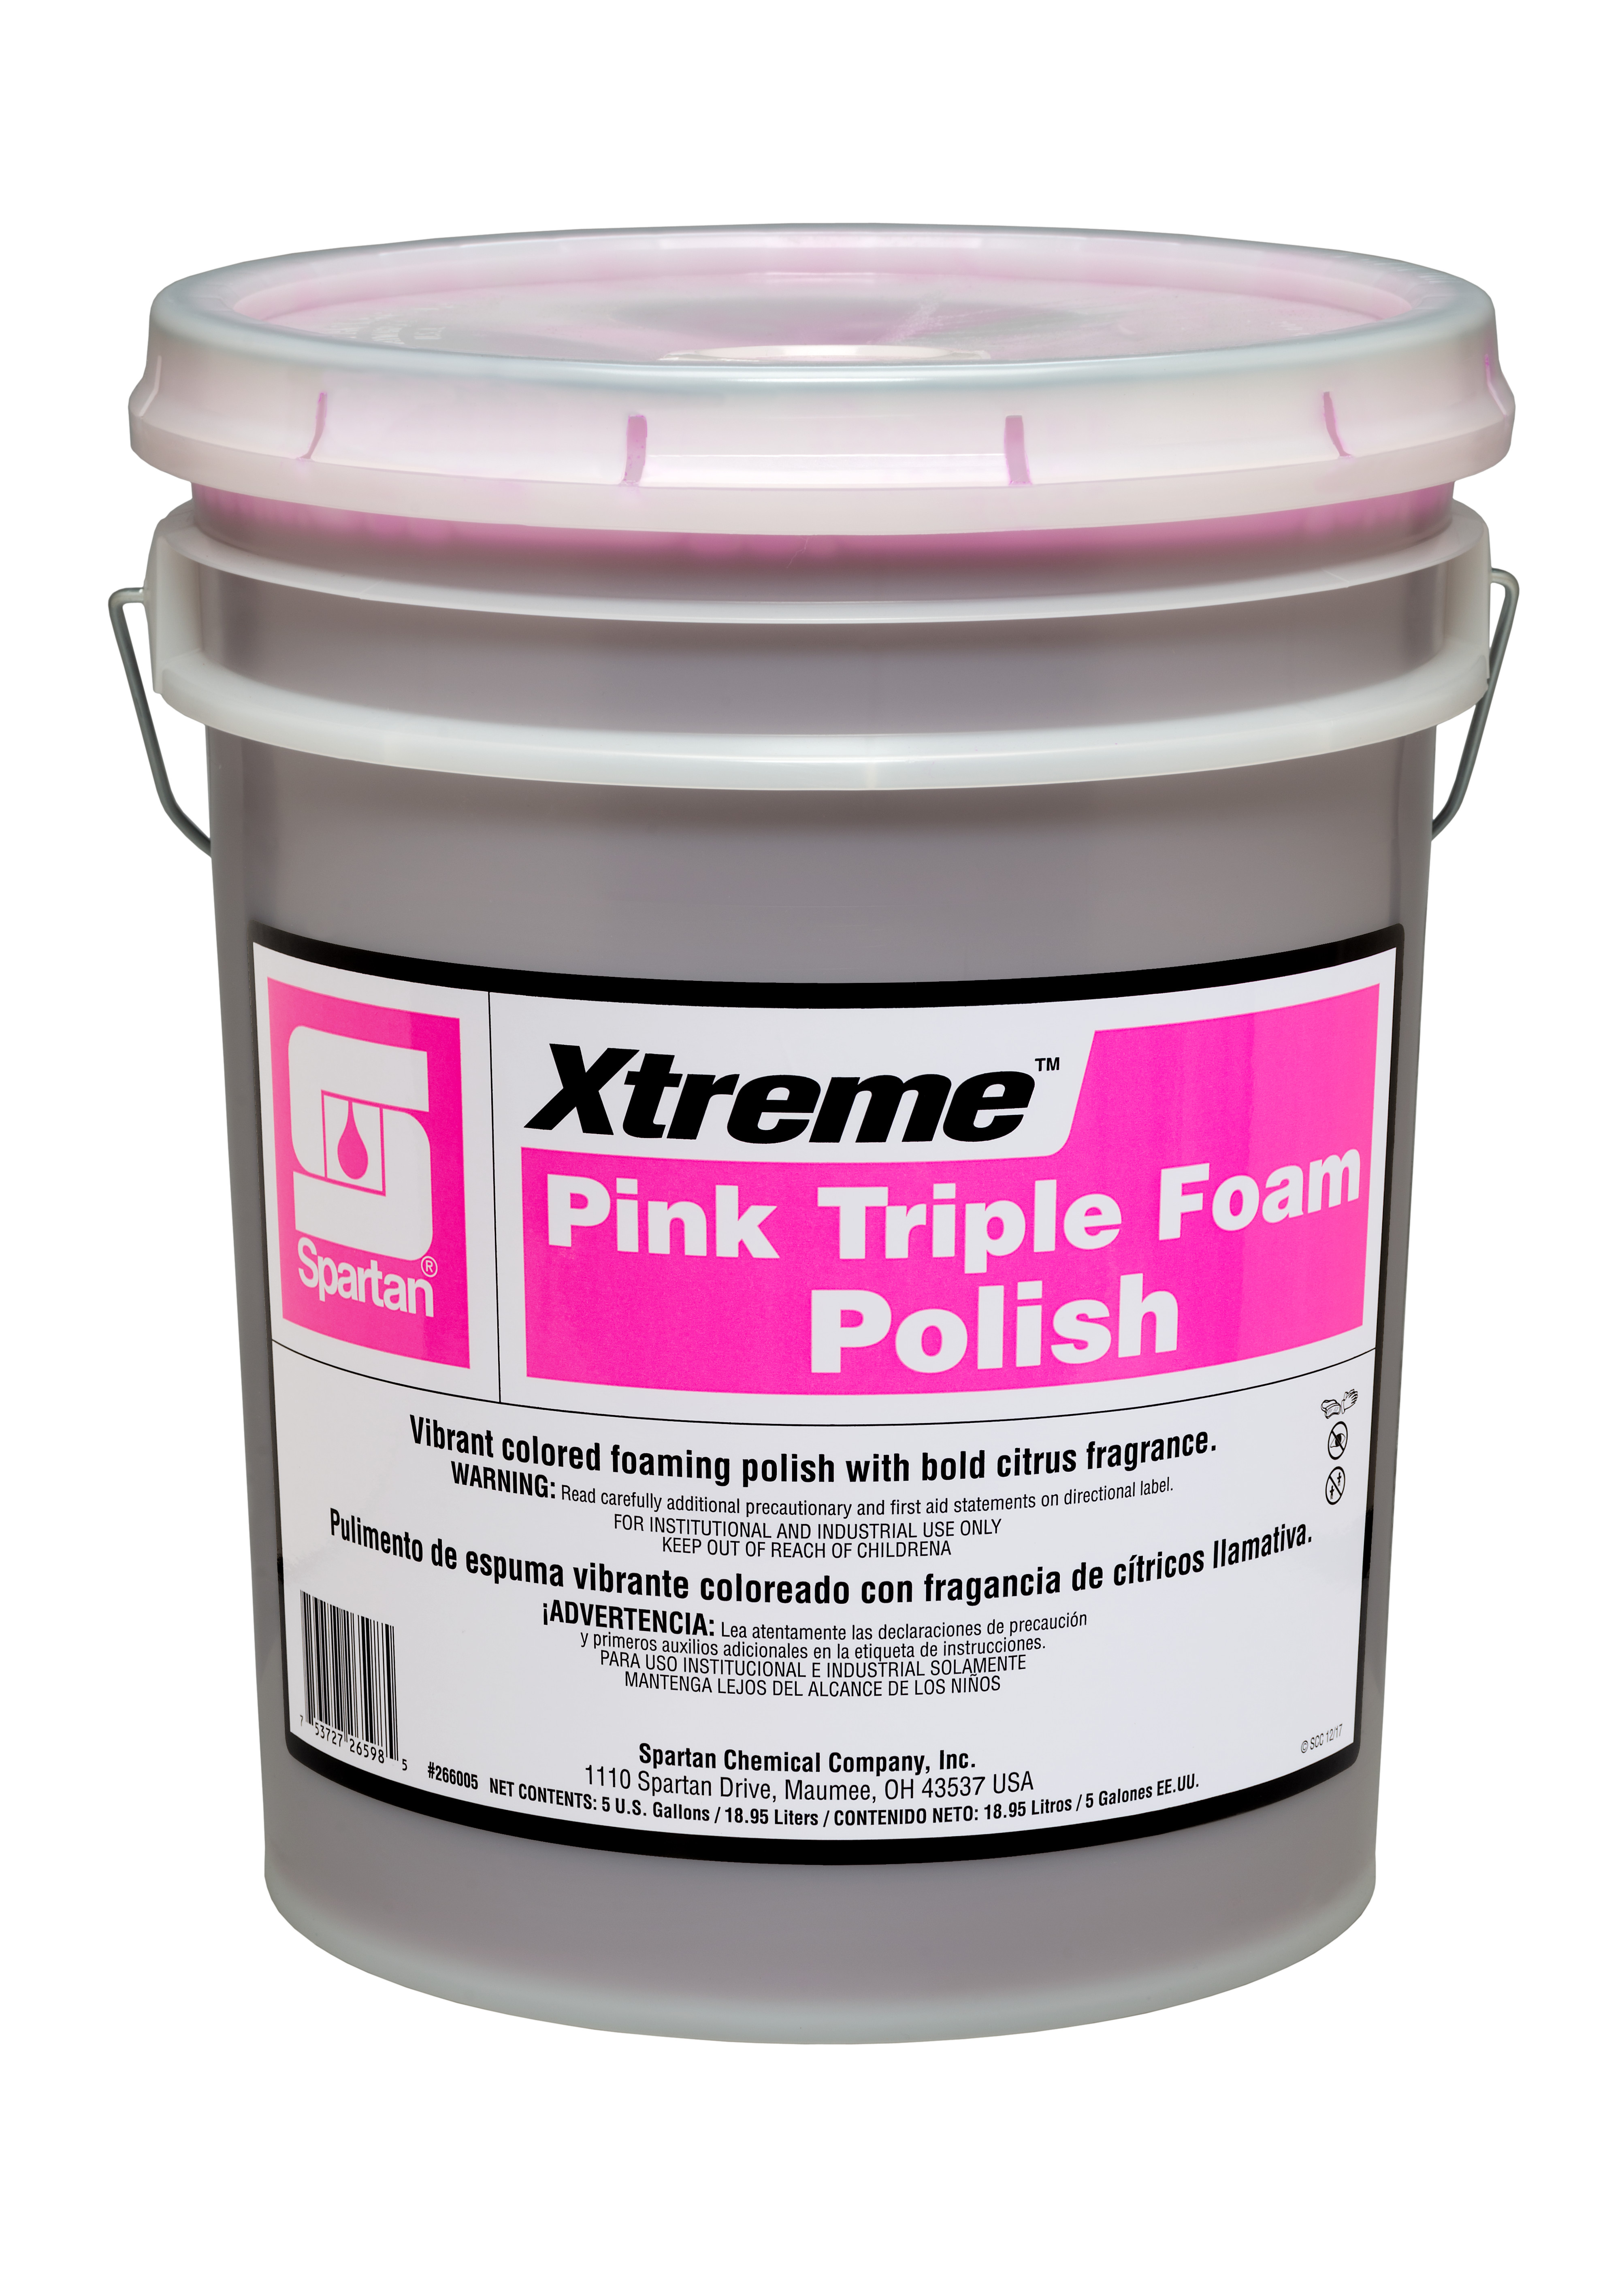 Spartan Chemical Company Xtreme Pink Triple Foam Polish, 5 GAL PAIL